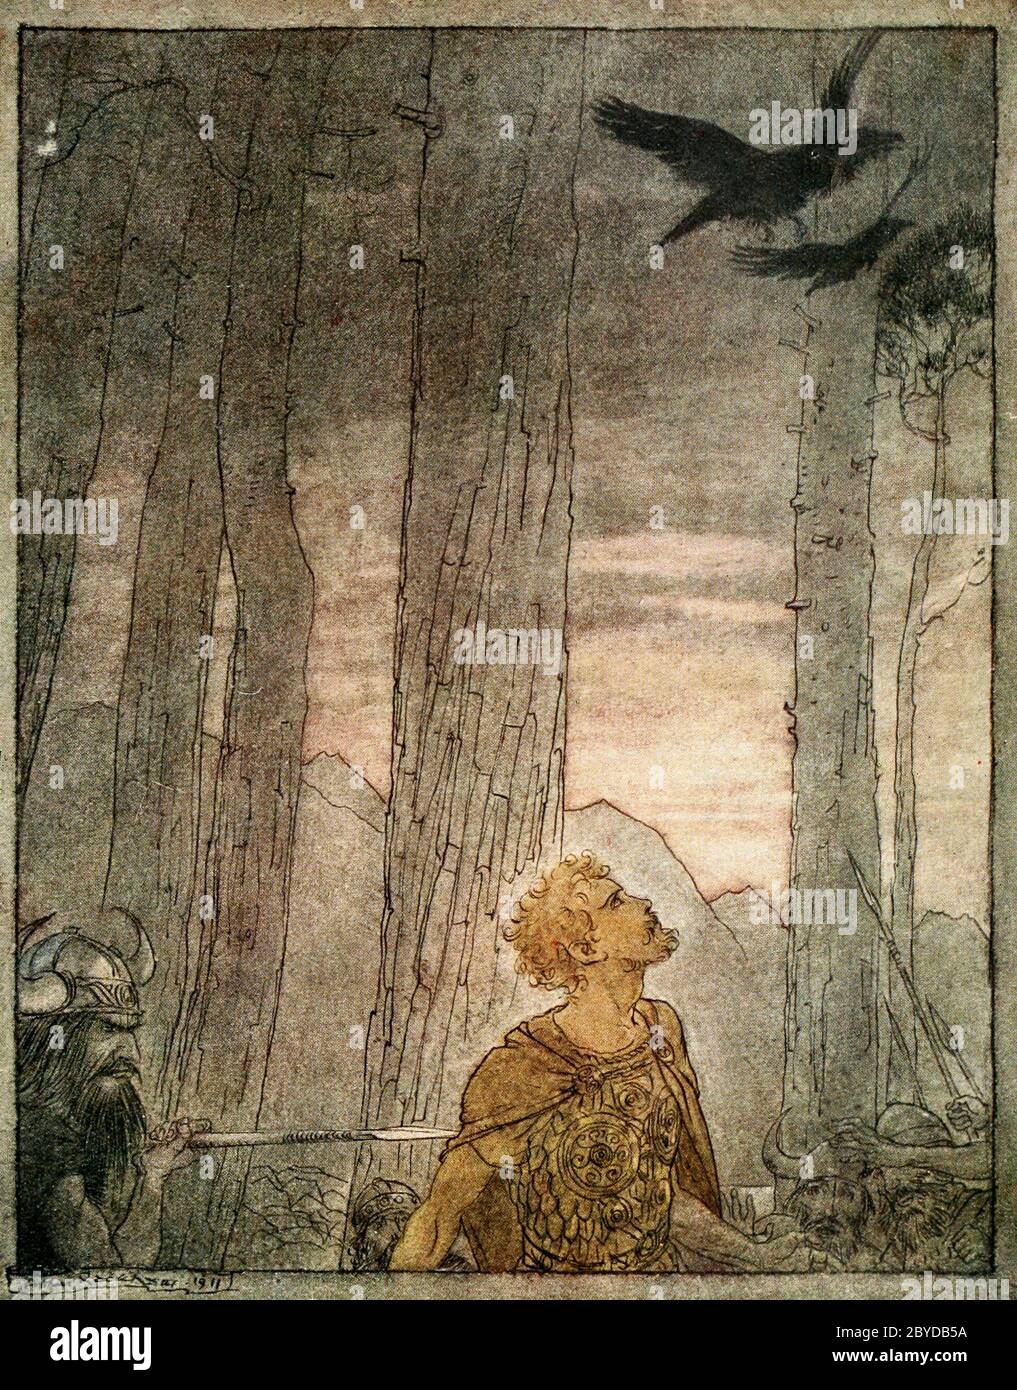 La mort de Siegfried au crépuscule des dieux - Arthur Rackham, 1911 Banque D'Images